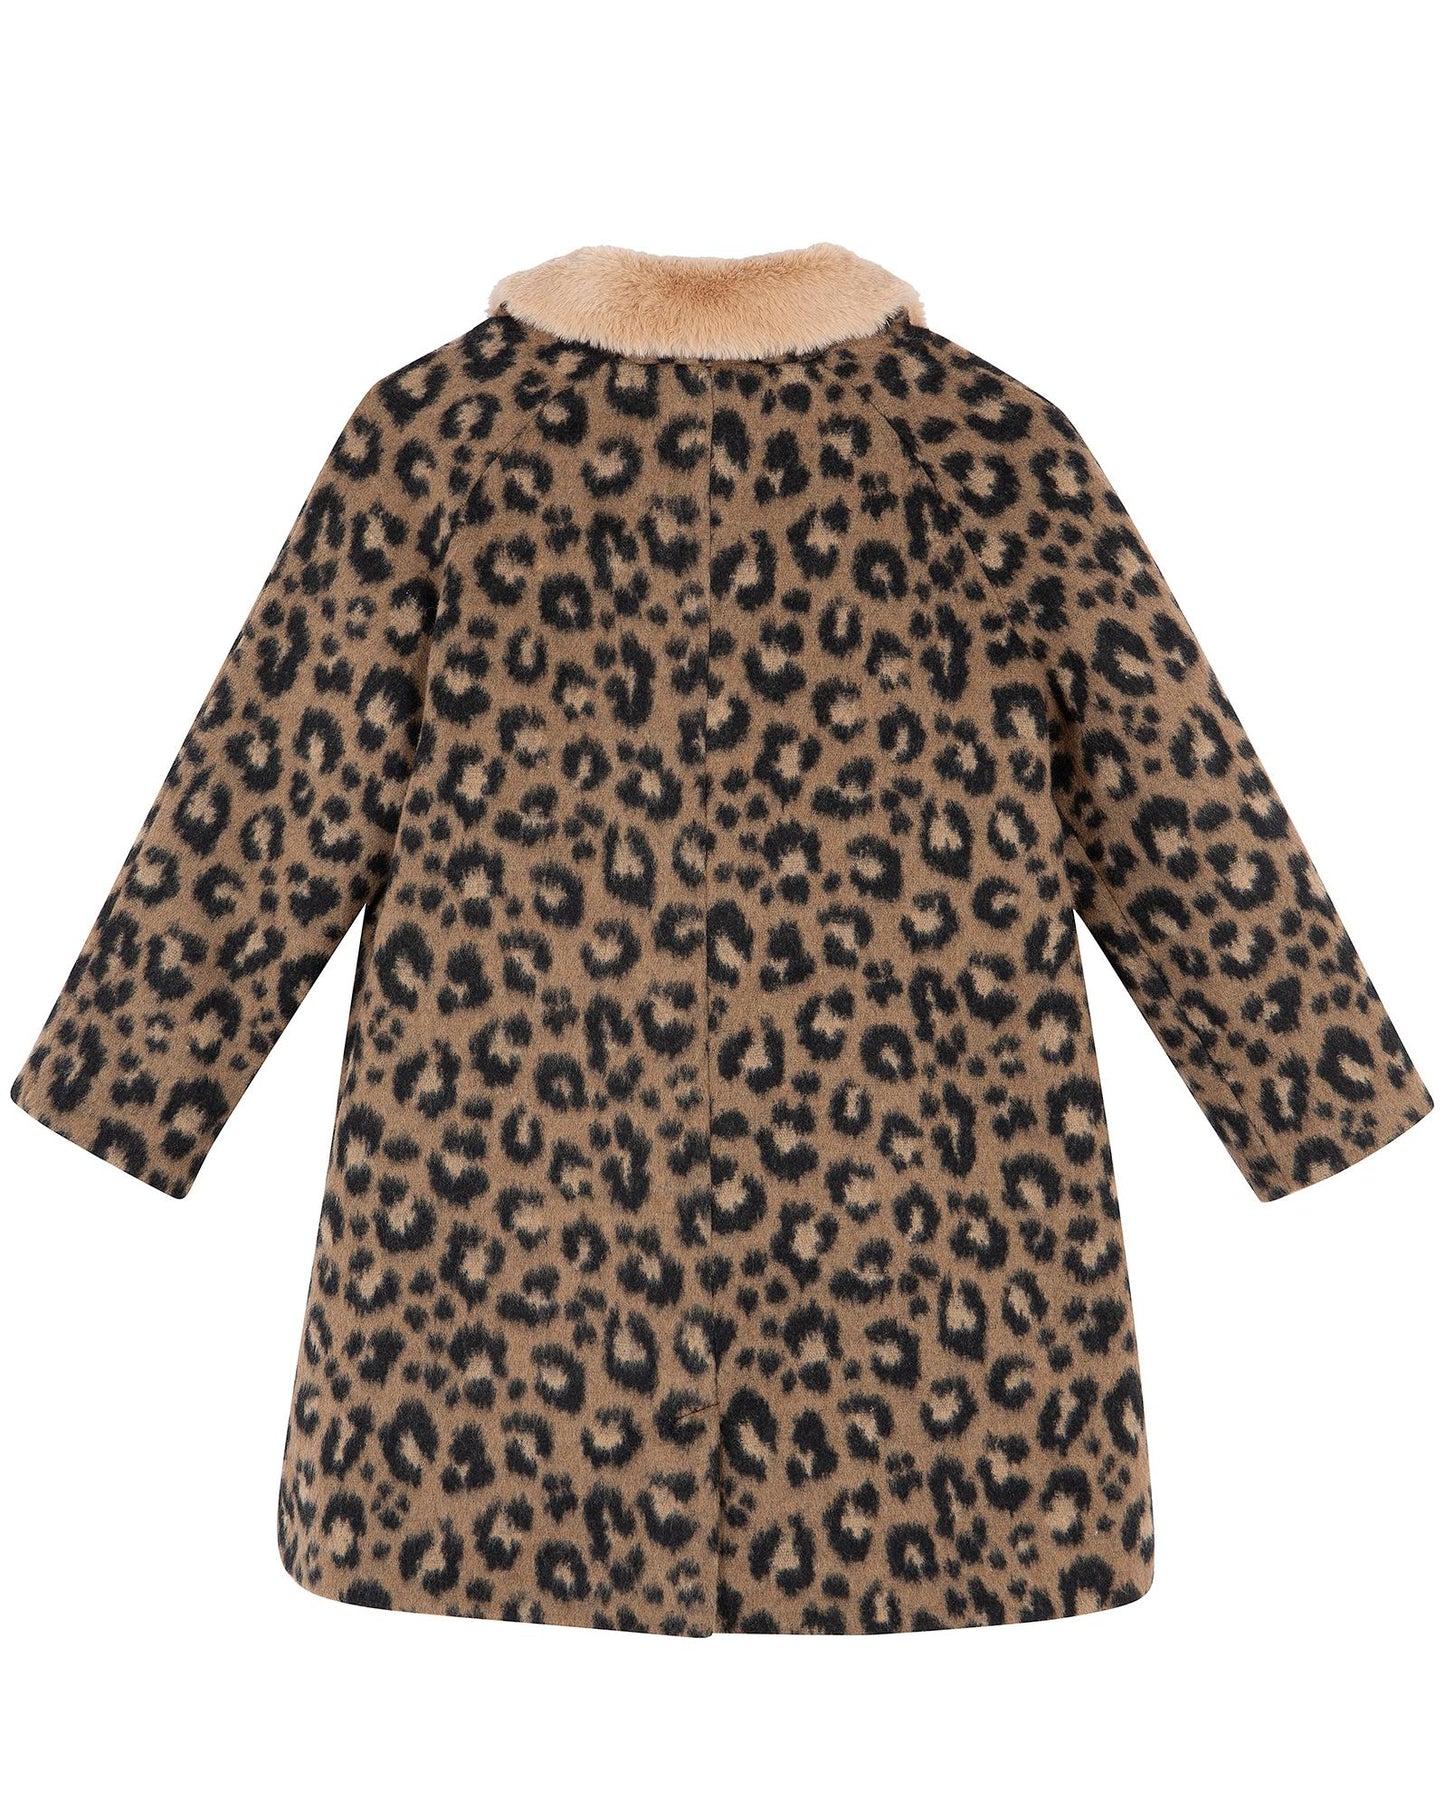 Manteau - Hilda marron en lainage imprimé léopard